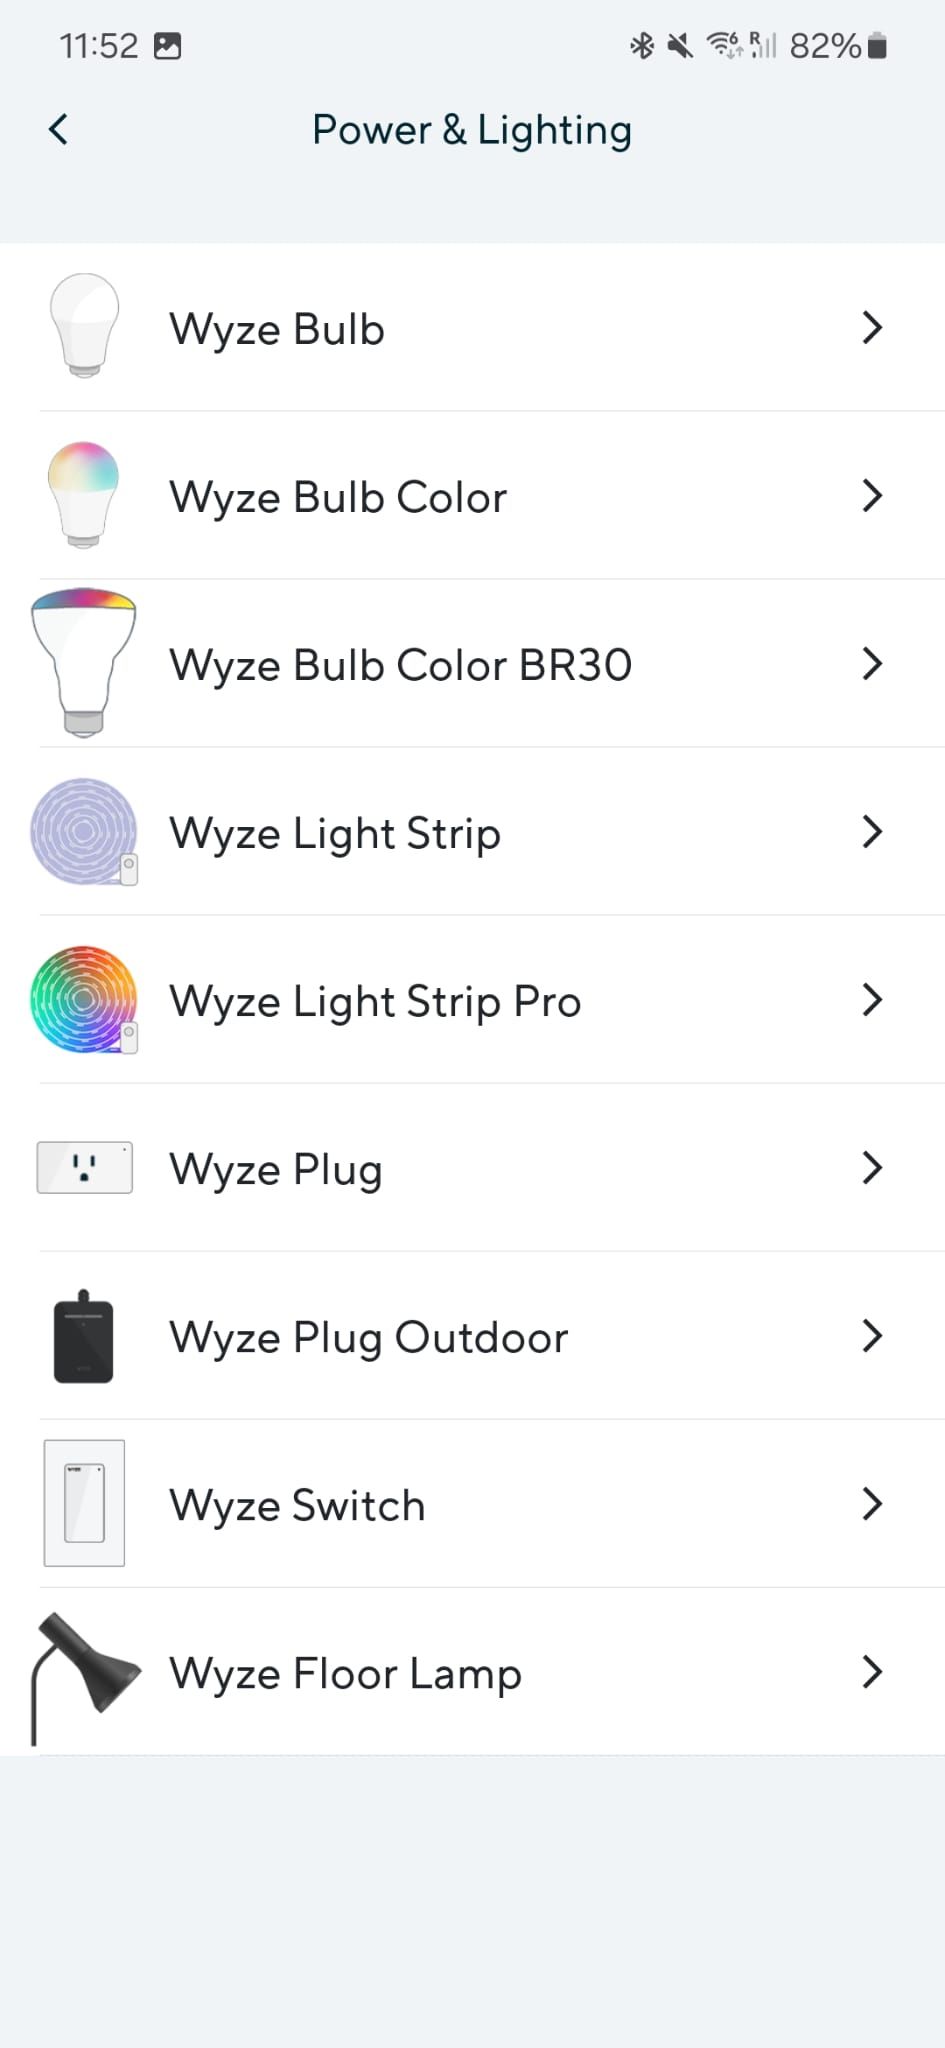 لقطة شاشة لتطبيق Wyze تعرض إضافة الجهاز